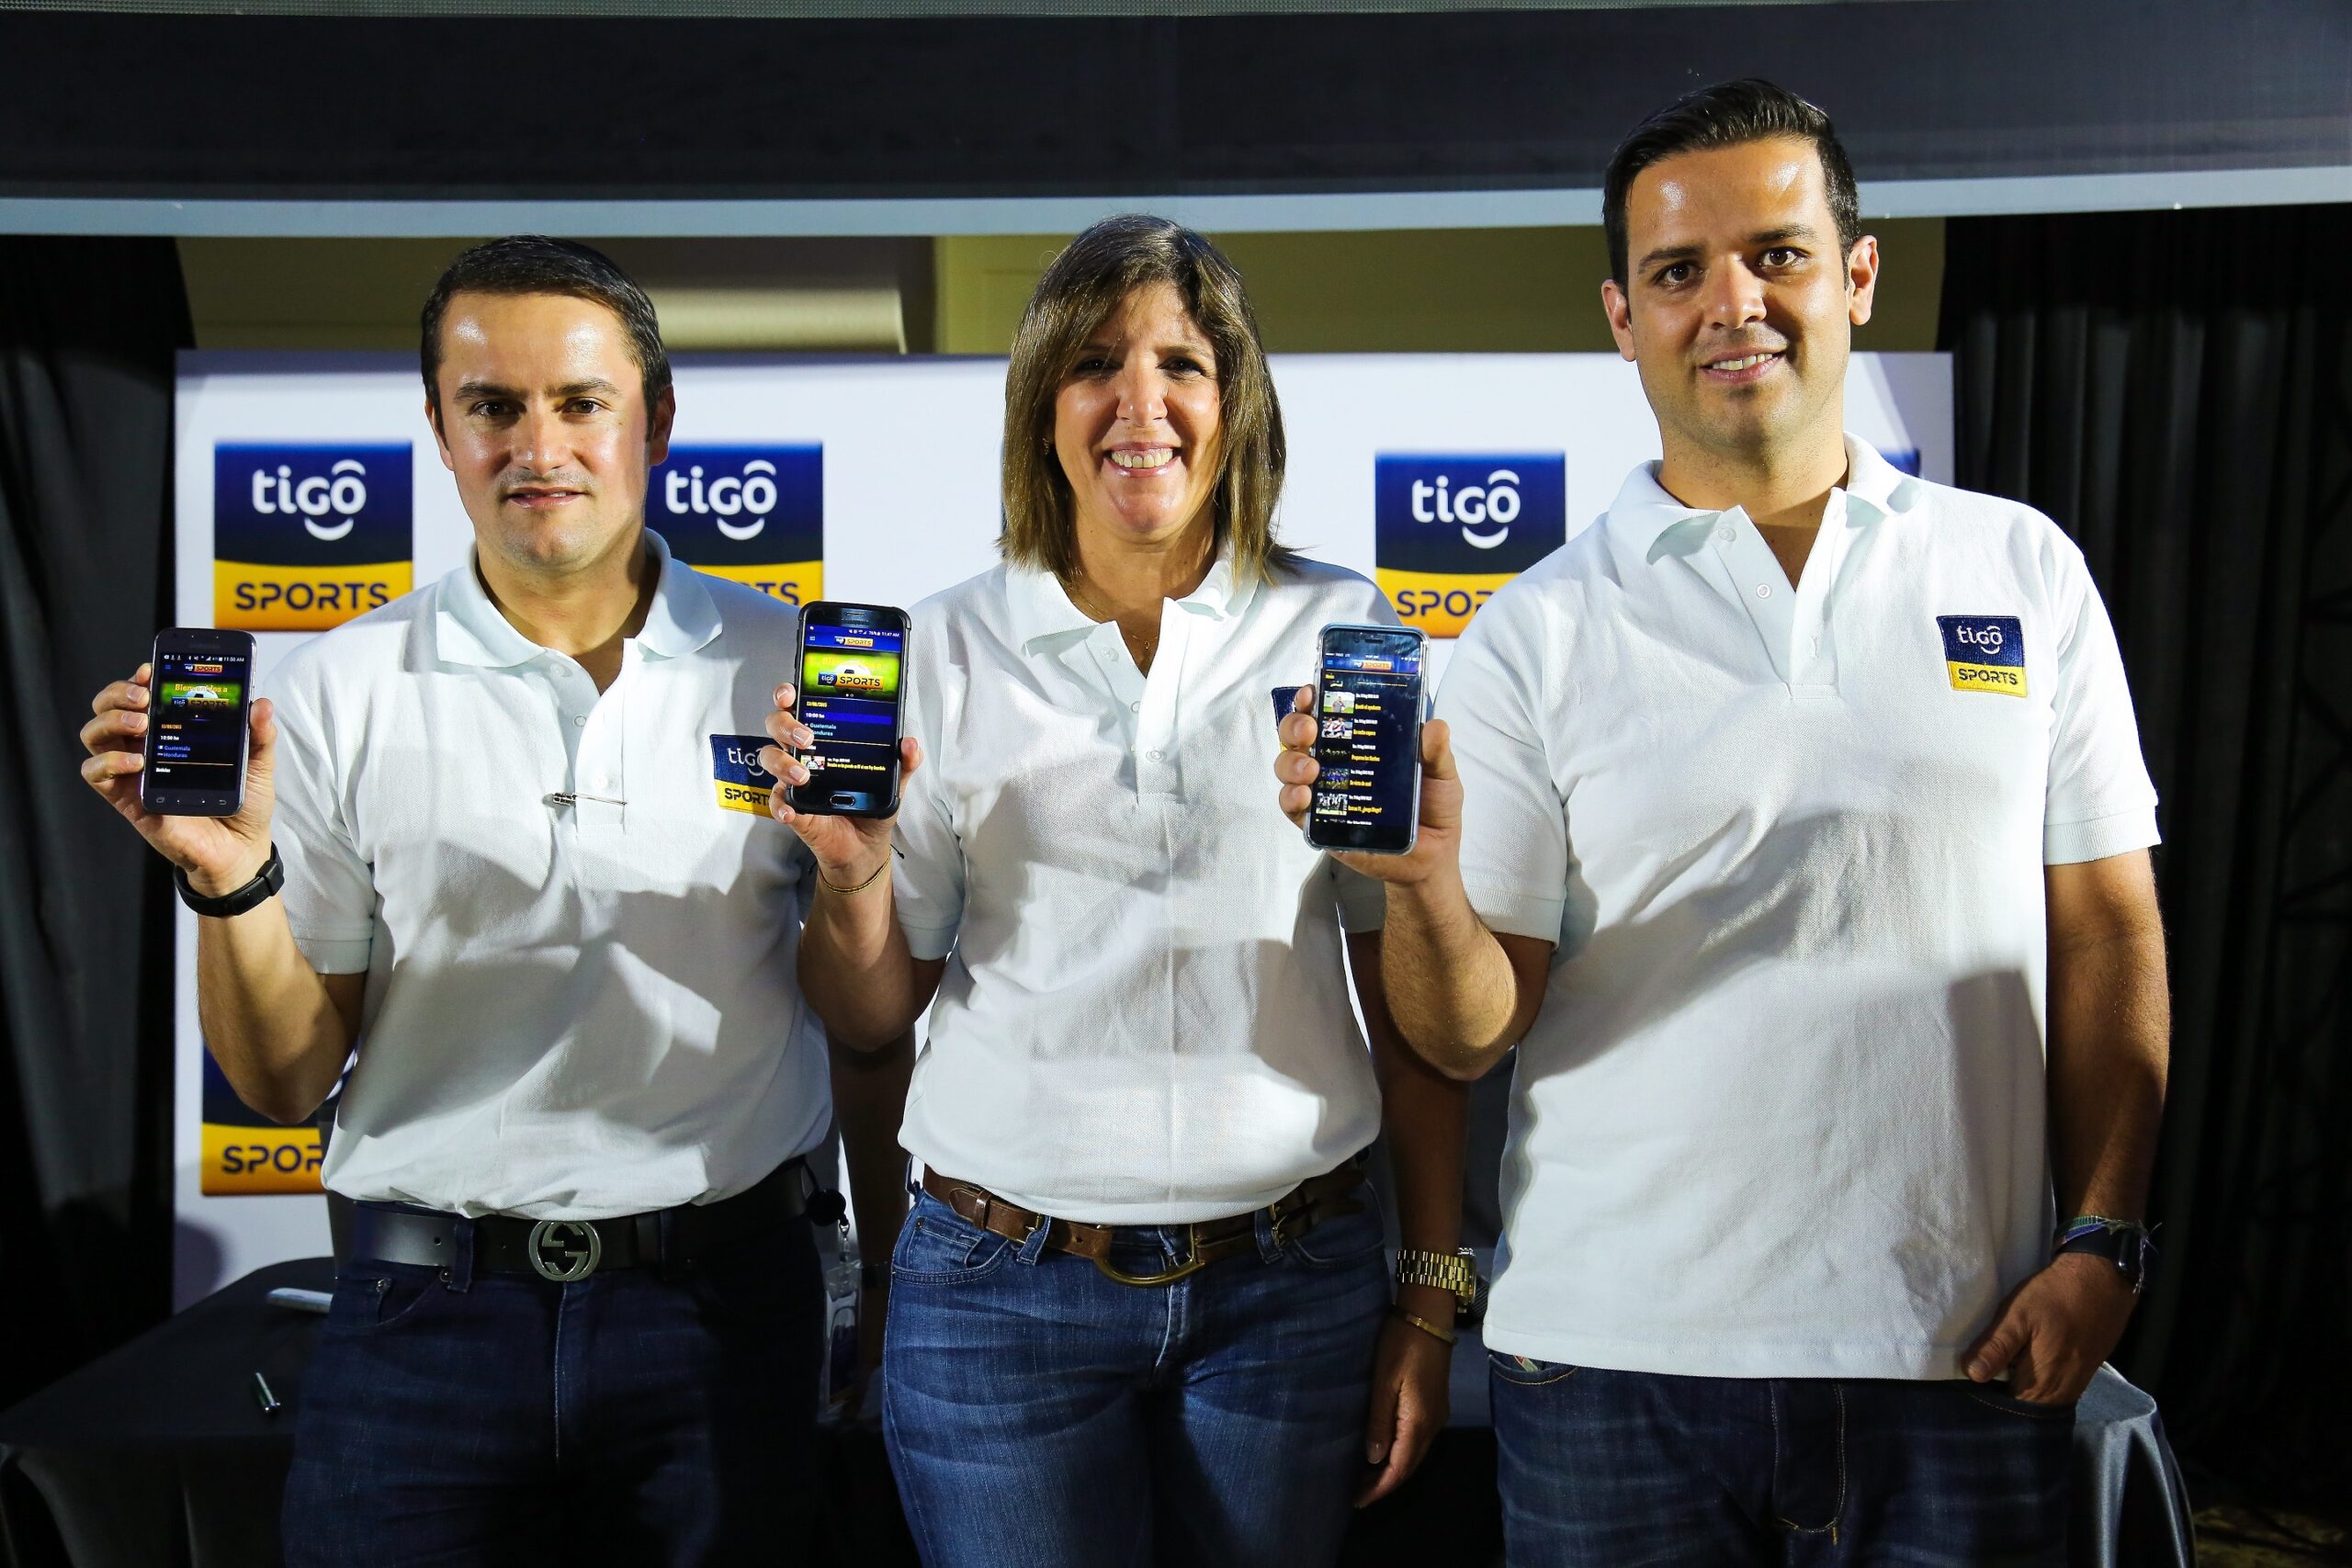 Llegó la nueva Tigo Sports App a Guatemala